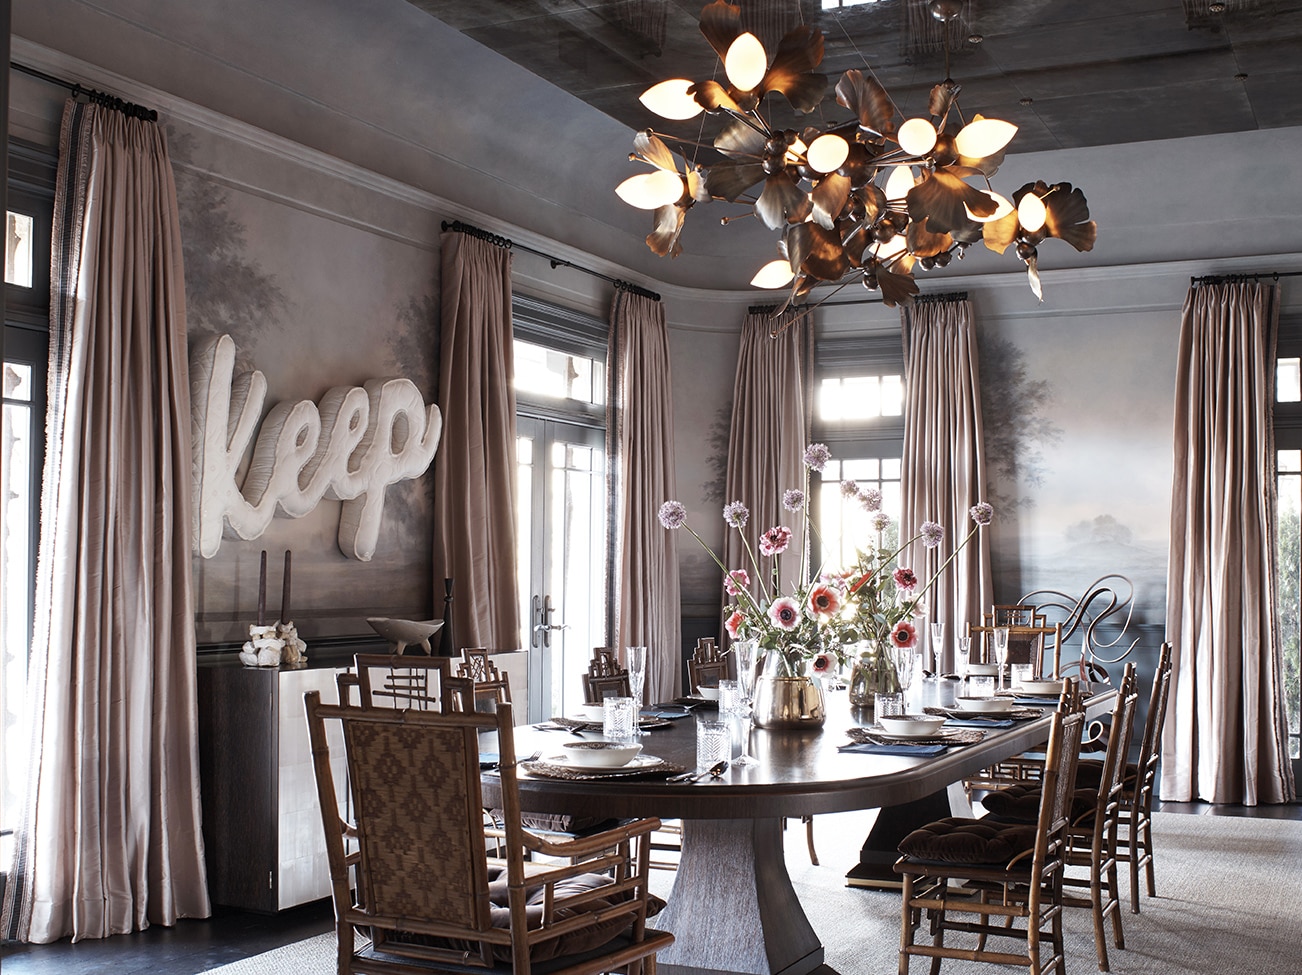 Salle à manger avec grandes fenêtres, rideaux pâles, papier peint et décorations sur les murs, plafond en miroir, lustre en forme de fleurs, table et chaises en bois.